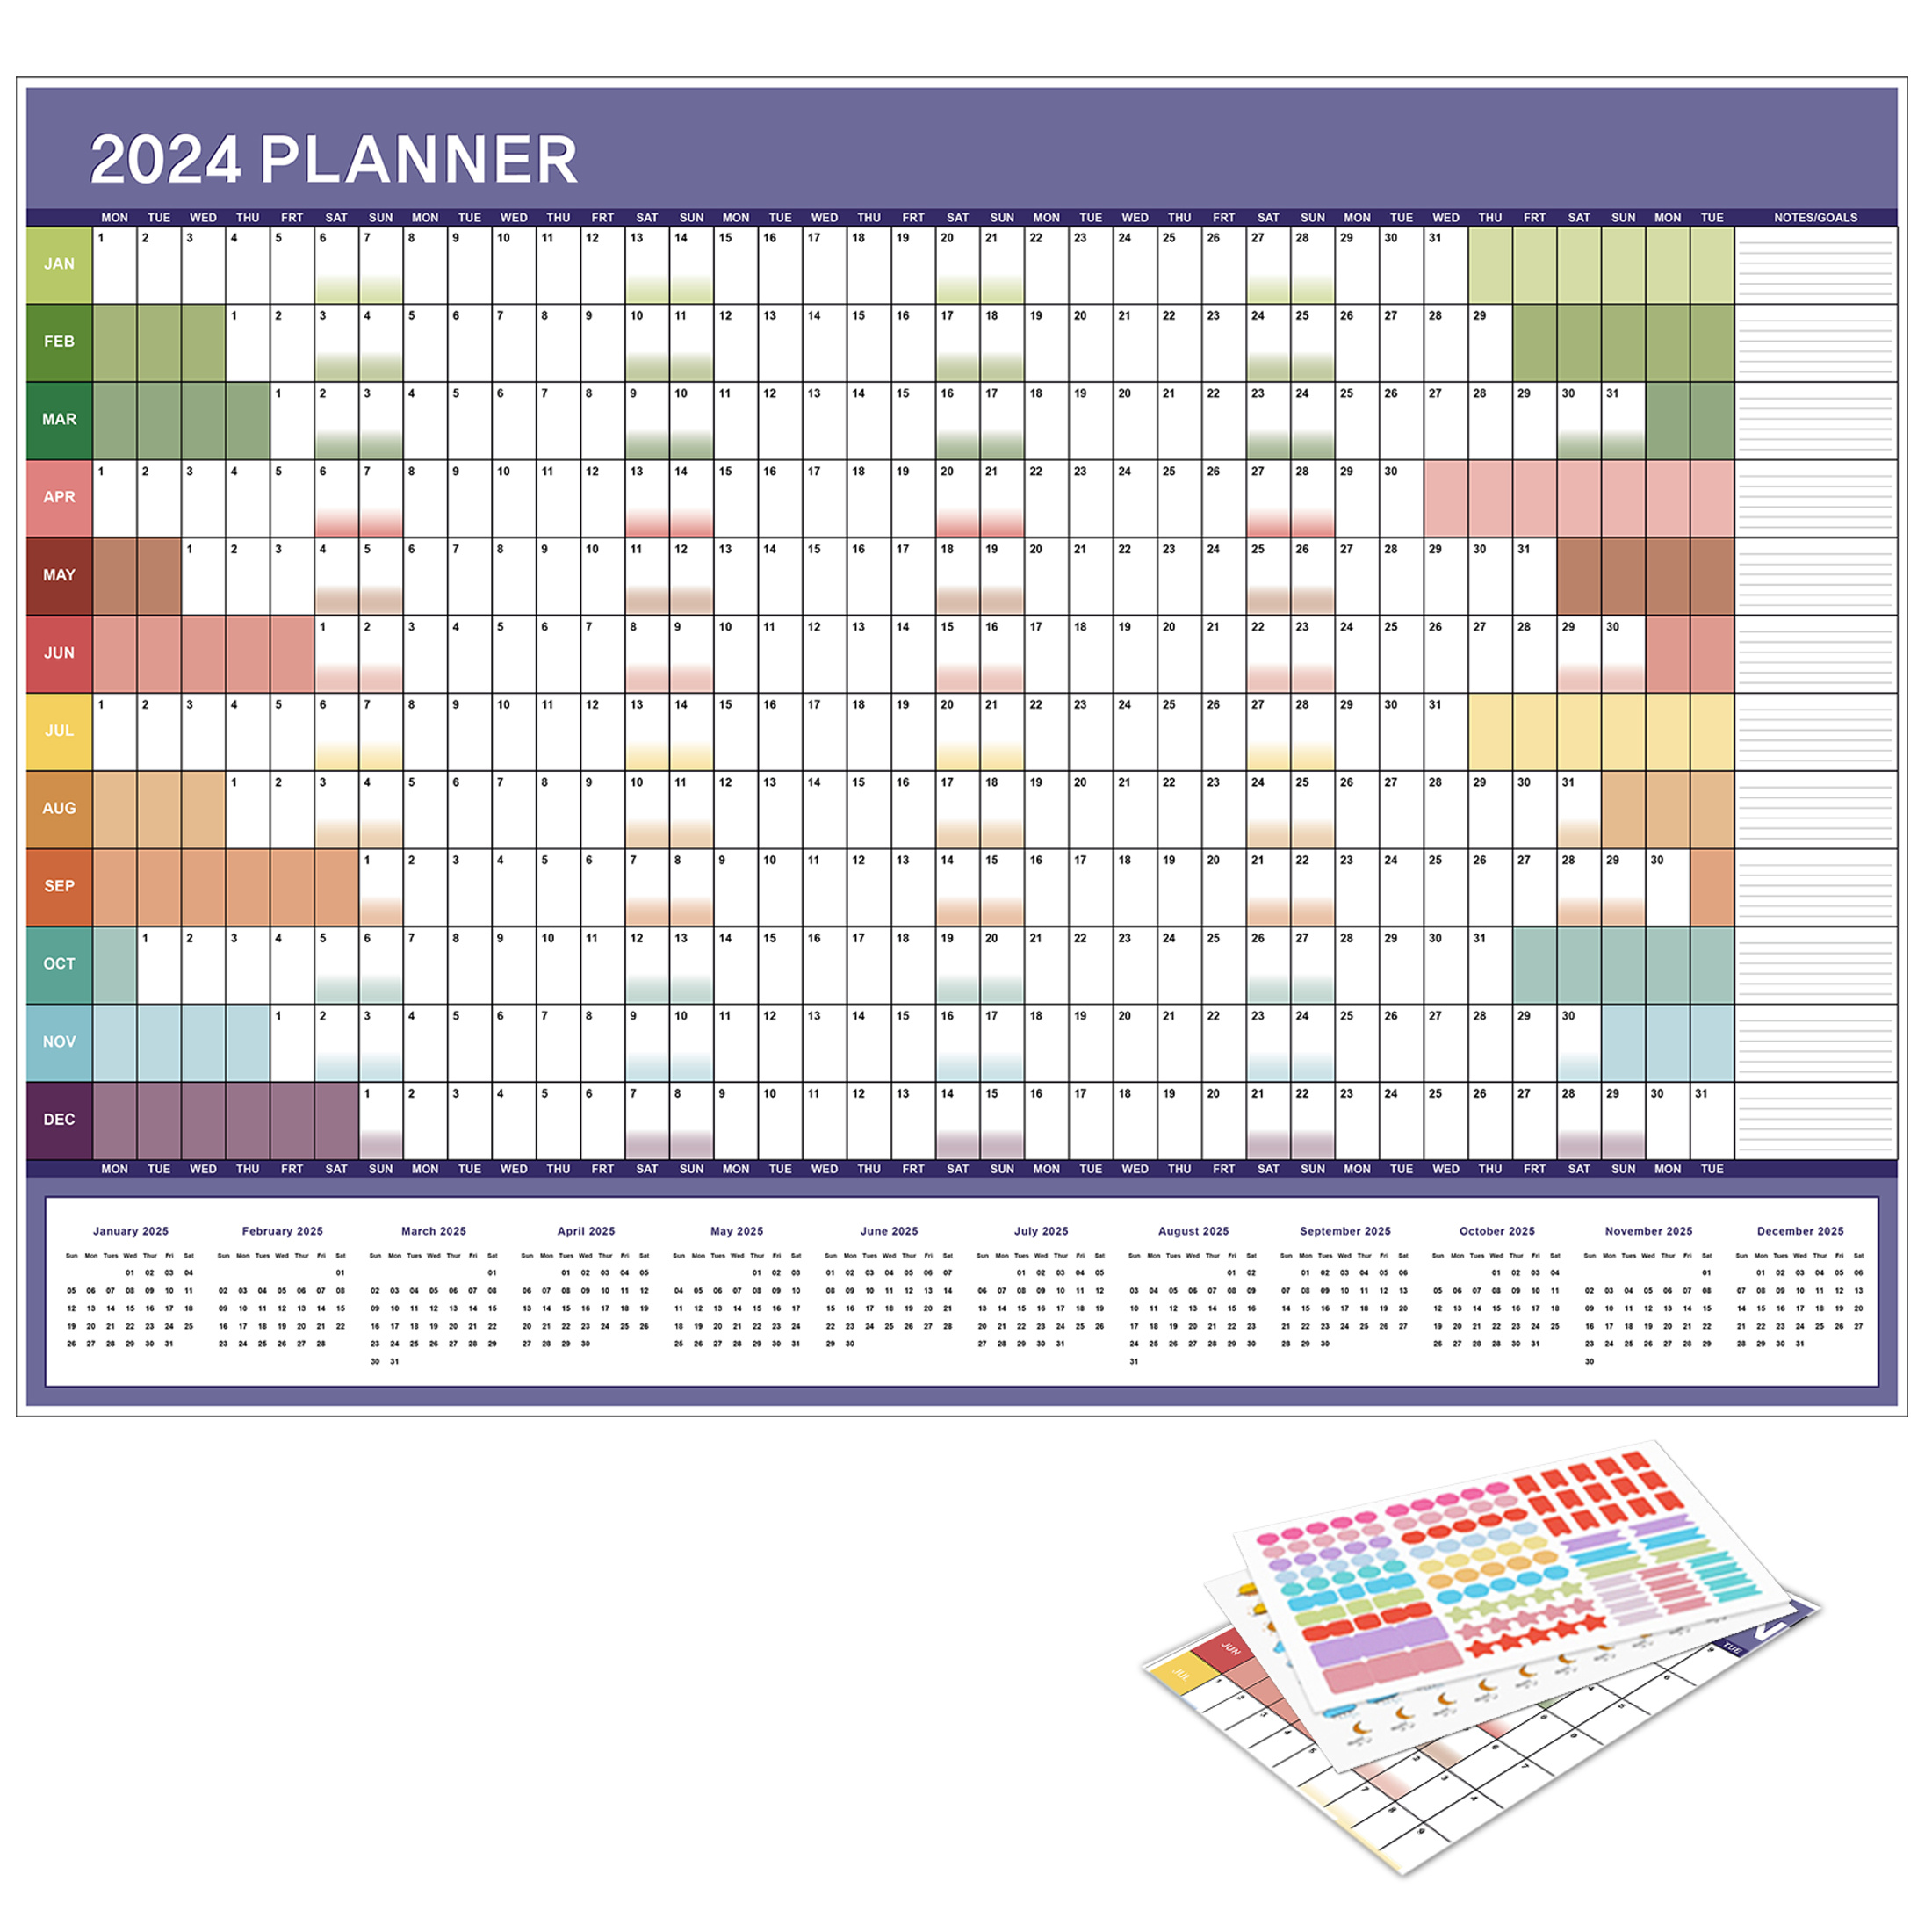 1 Calendario Da Parete 2024, Visualizzazione Dell'intero Anno, Da Gennaio A  Dicembre, Calendario Di Pianificazione Del Viaggio Per La Scuola, L'home